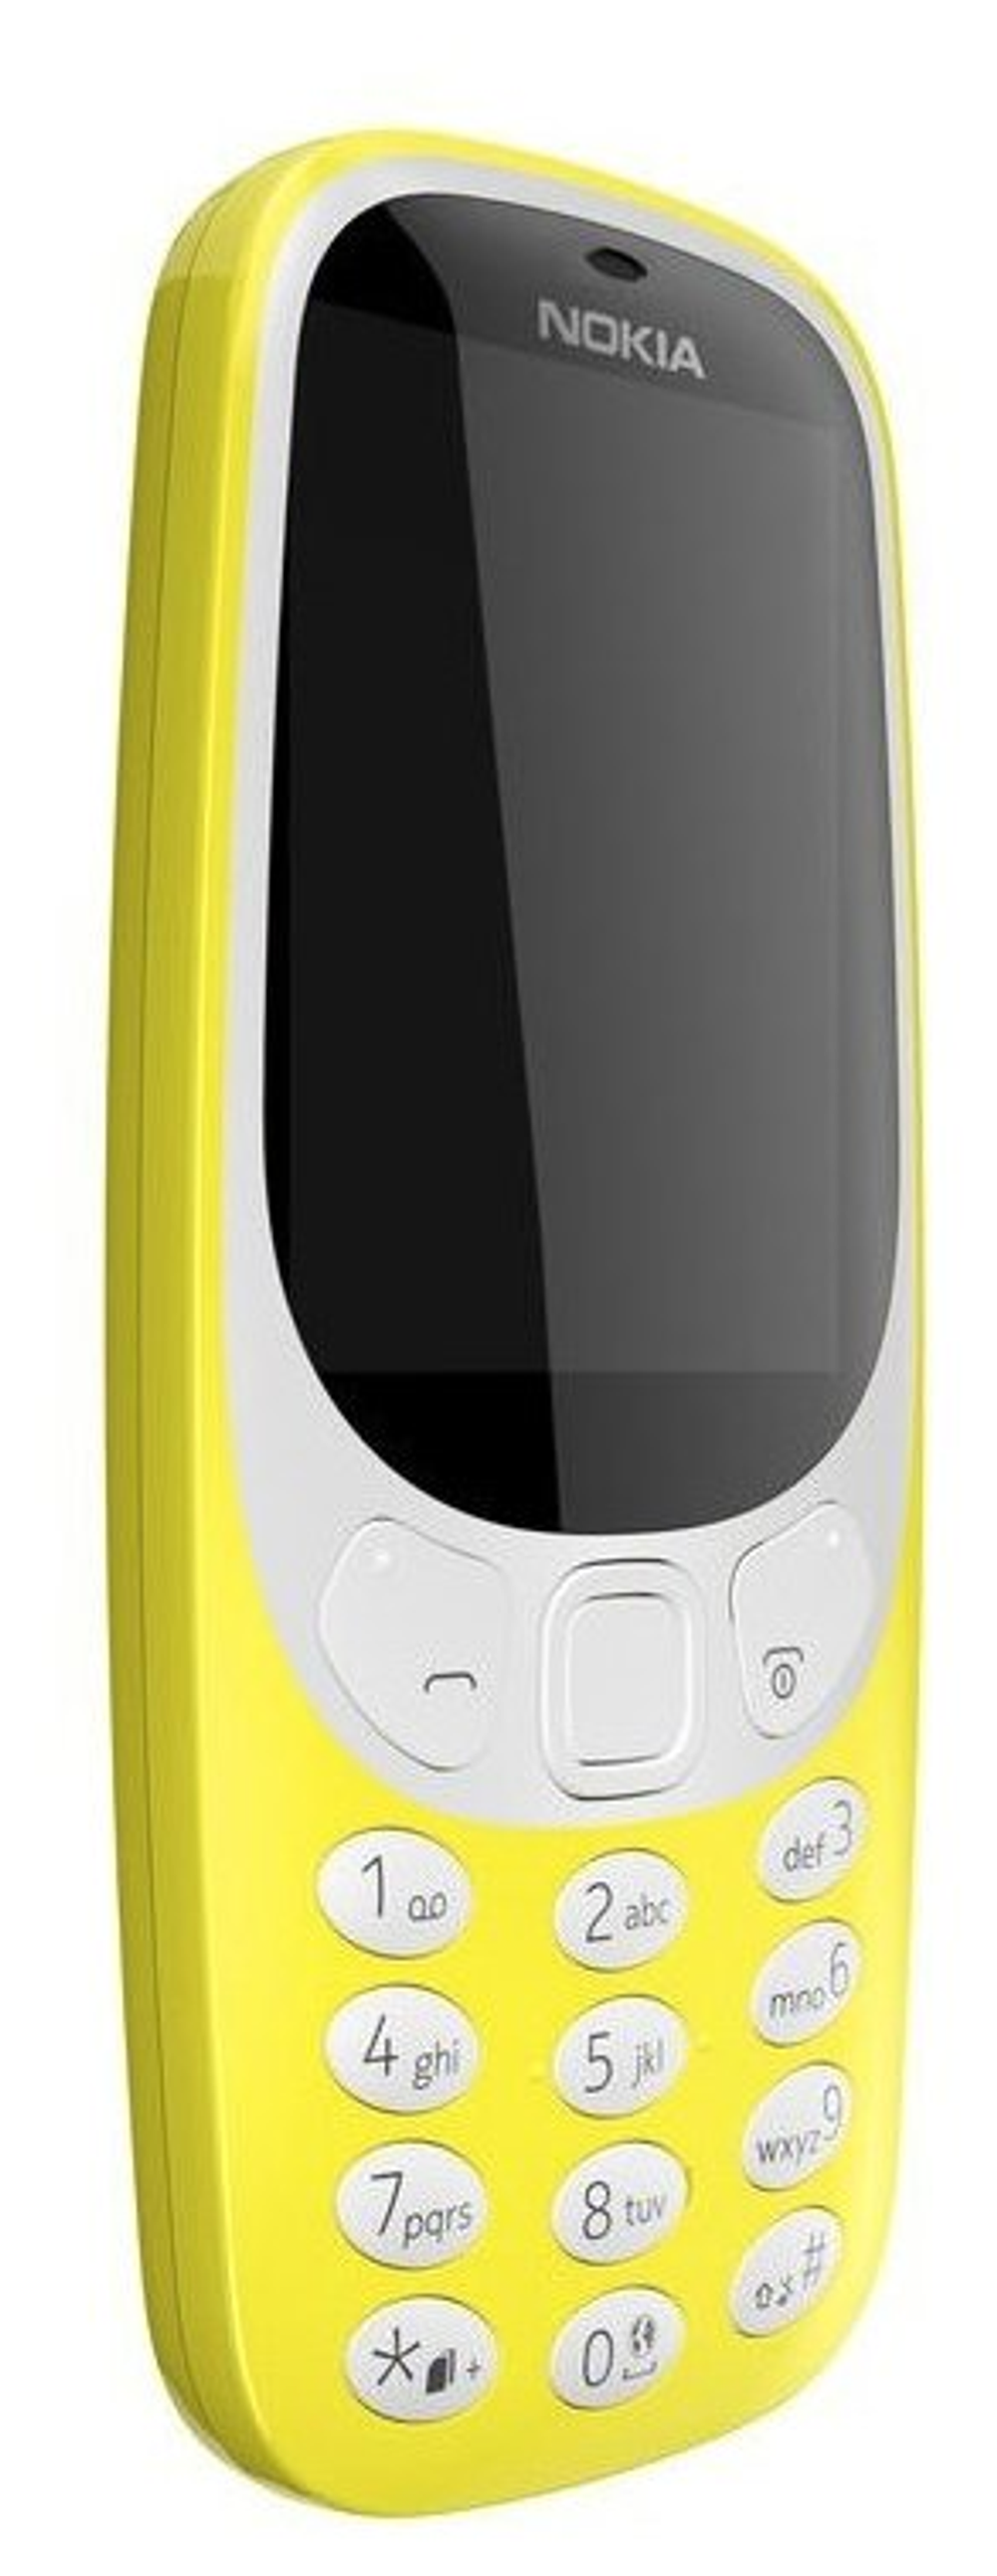 Сотовый телефон Nokia 3310 Dual Sim (ТА-1030) Yellow